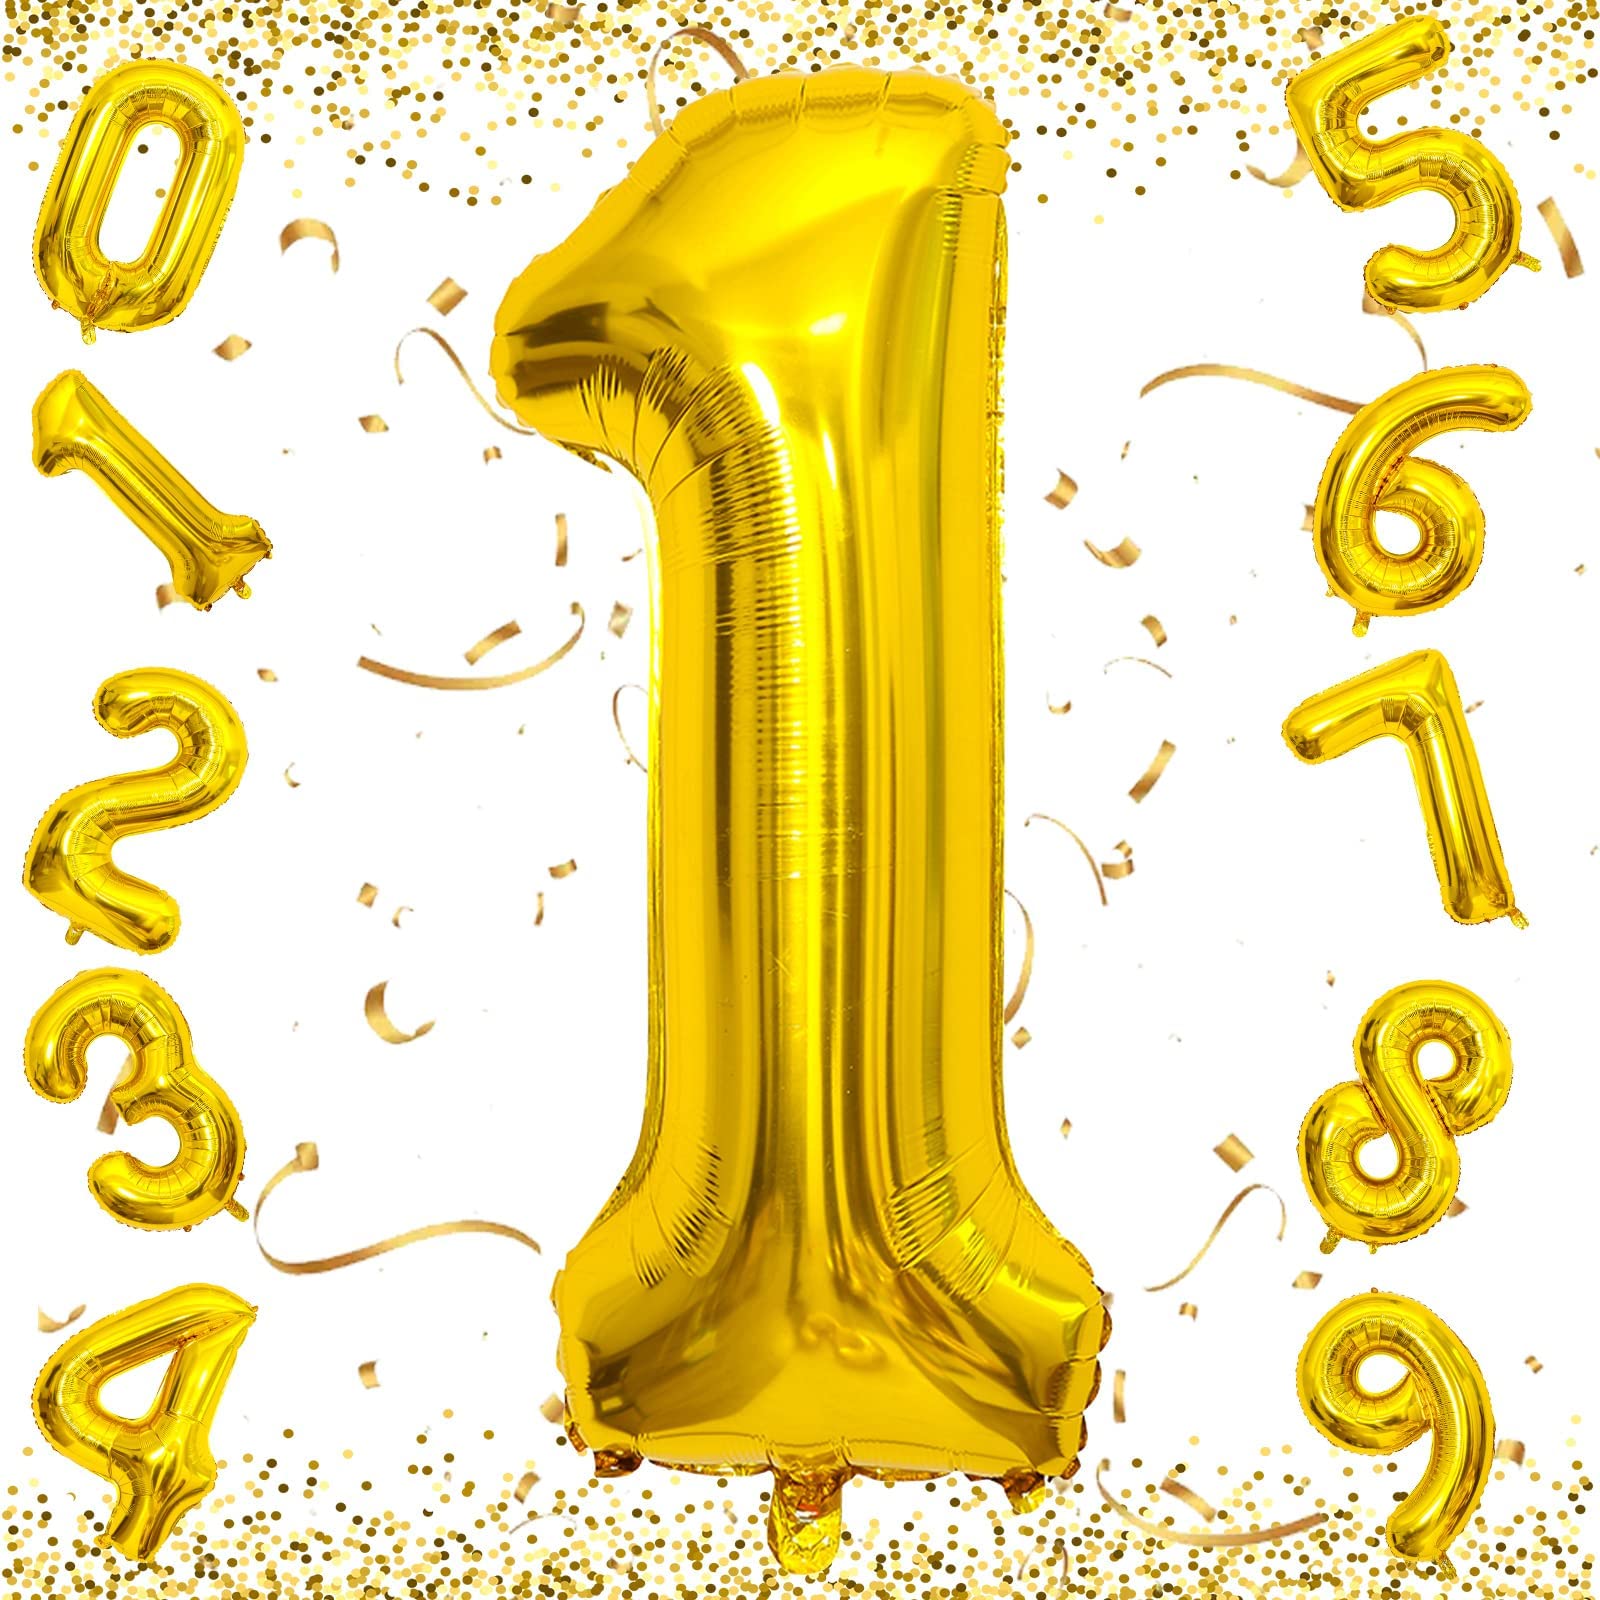 EXGOX 数字 バルーン ライトグリーン 大きい 誕生日 ナンバー 1 アルミ風船 32インチ ハッピーバースデー パーティー 成人式 入学 卒業式 記念日 お祝い 飾り付け